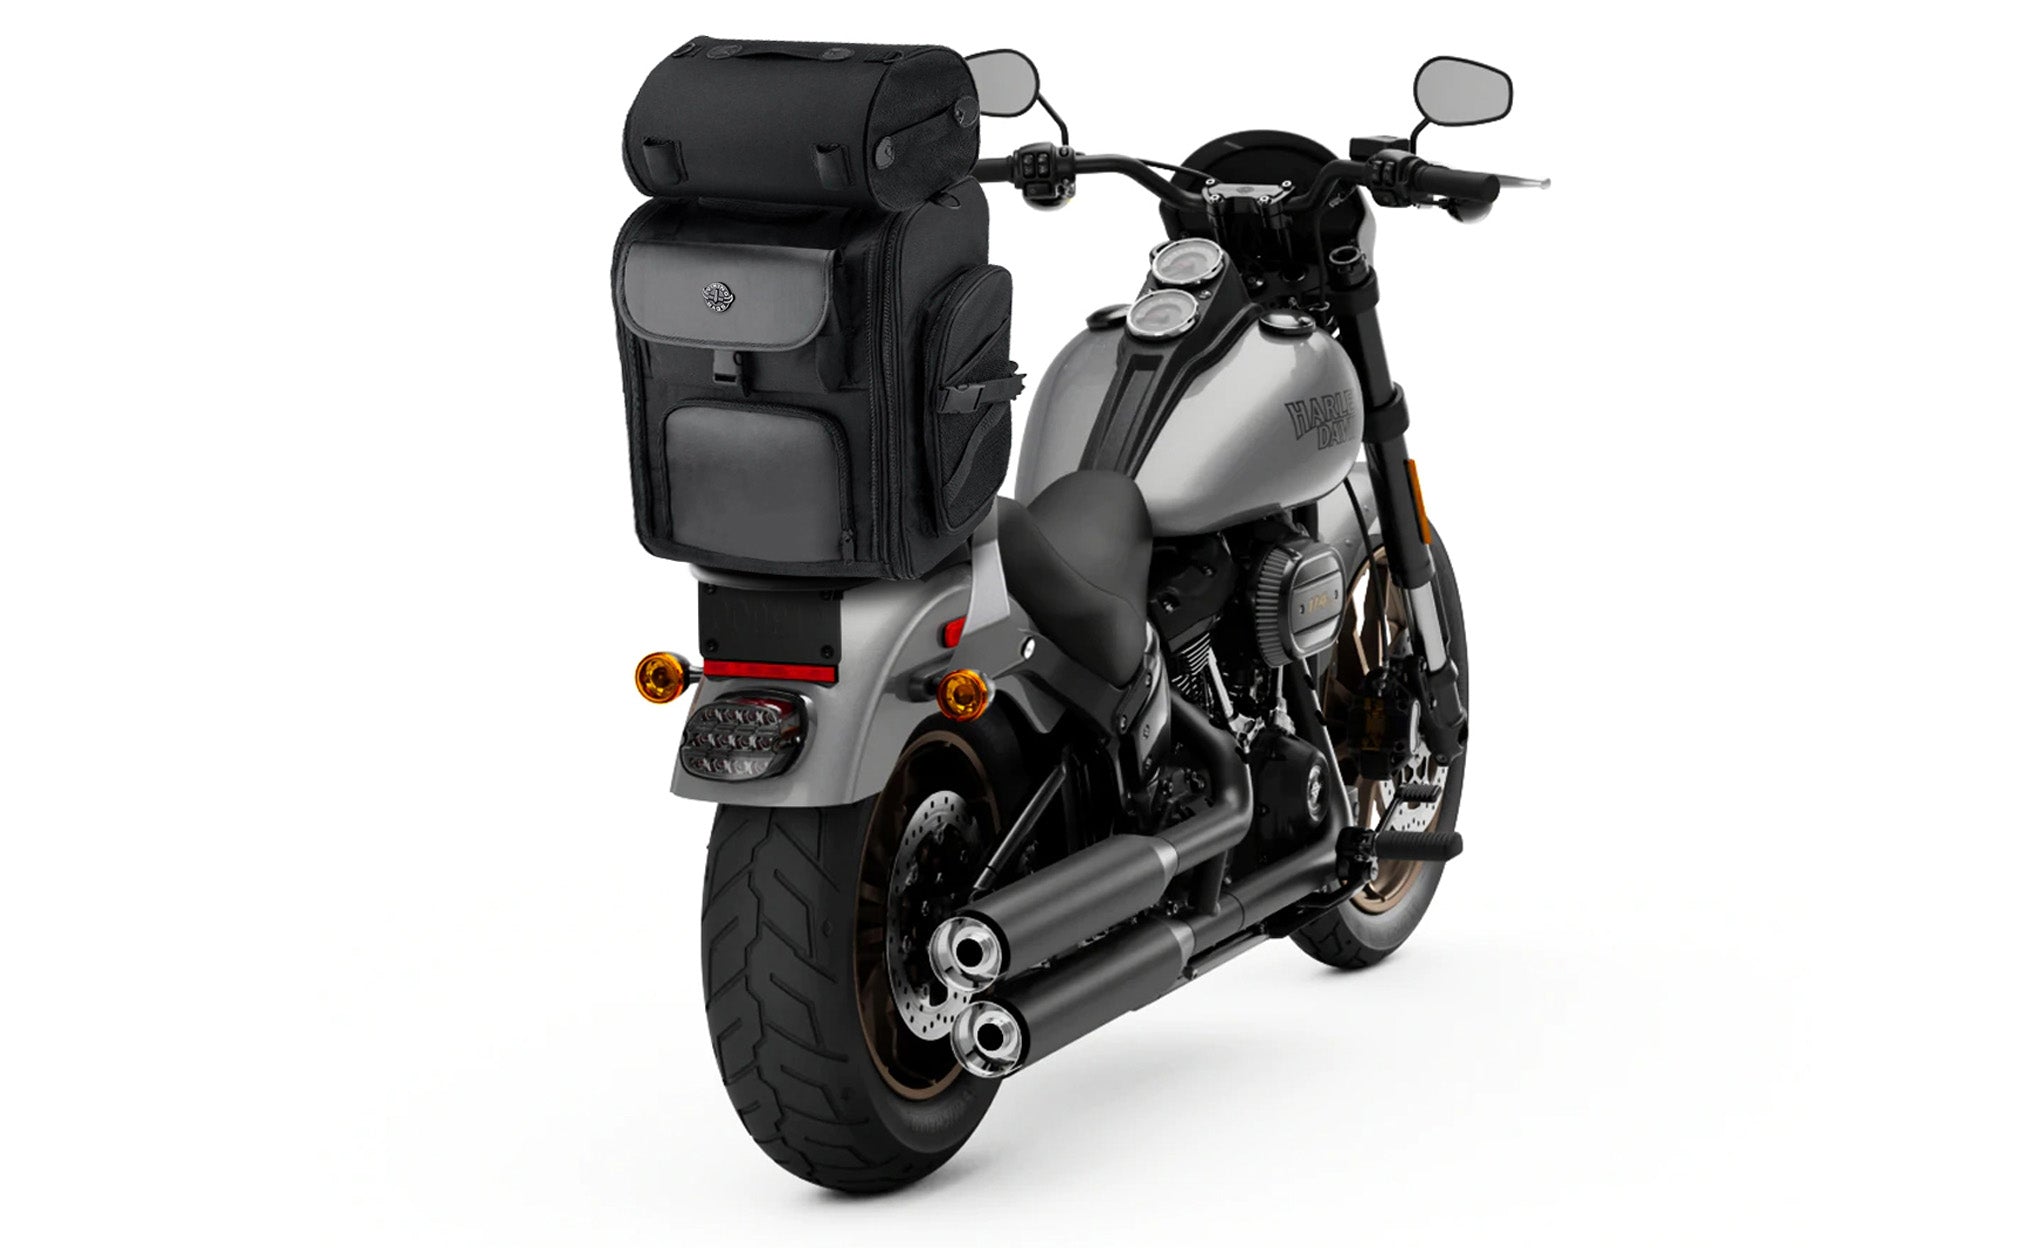 Viking Dwarf Medium Hyosung Motorcycle Tail Bag Bag on Bike View @expand